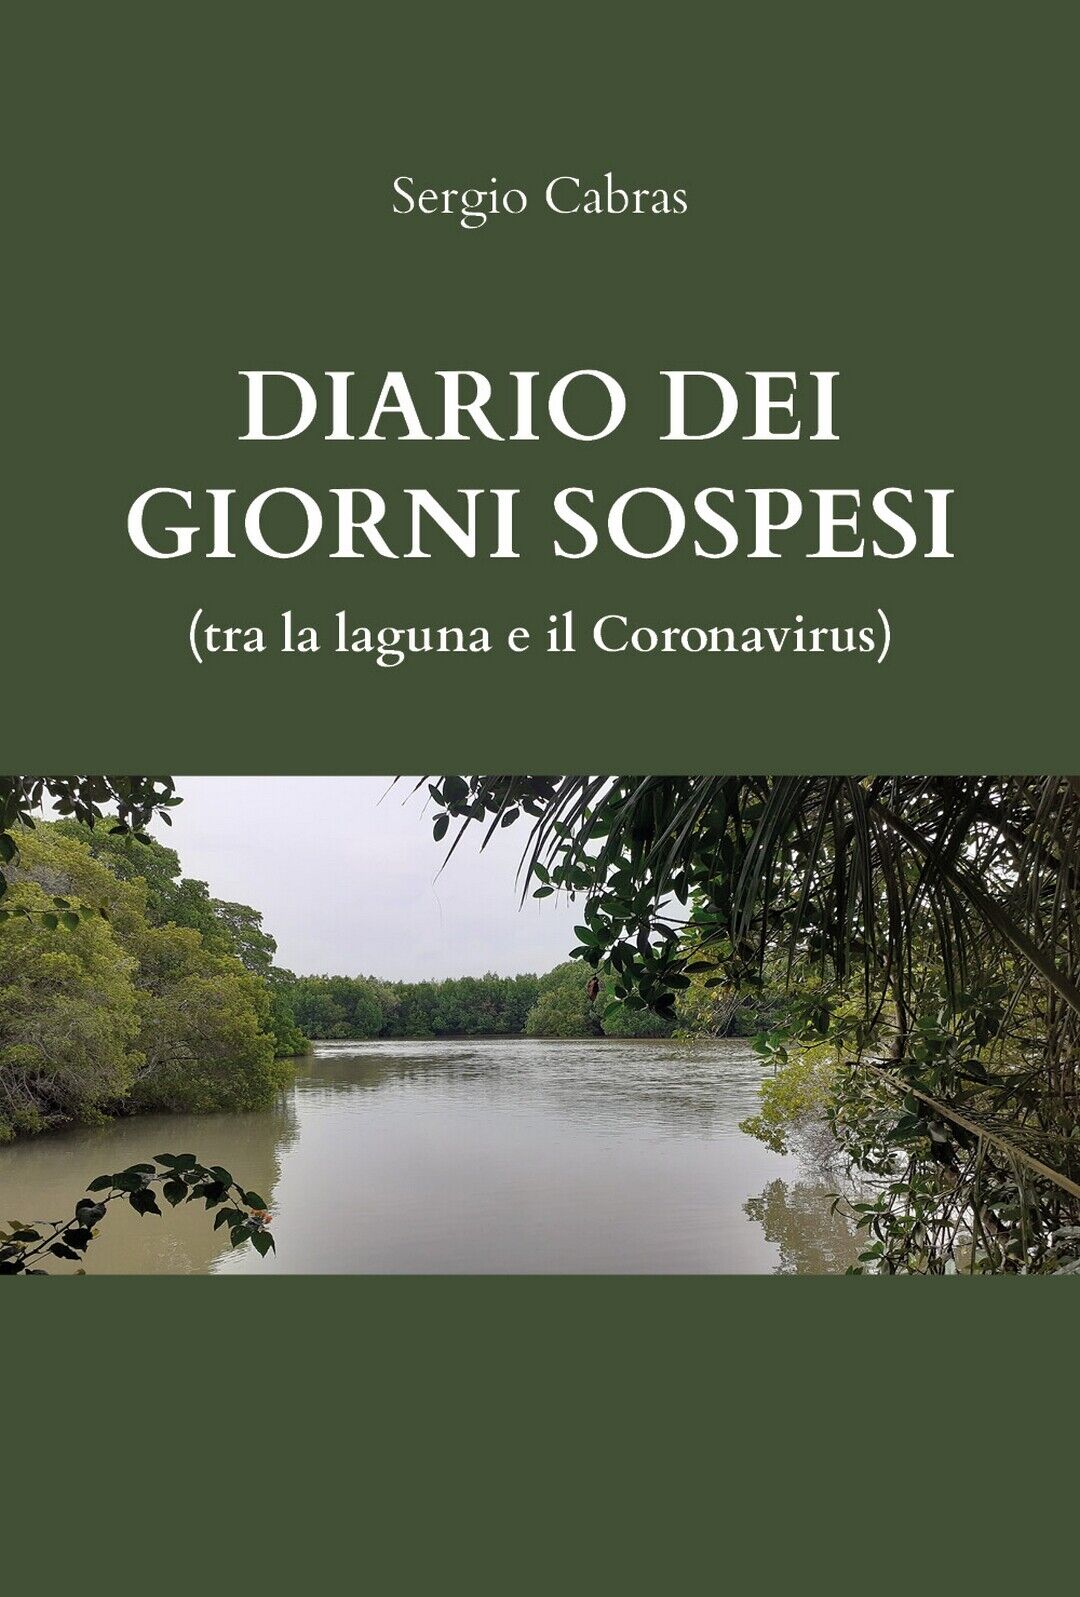 Diario dei giorni sospesi (tra la laguna e il Coronvirus)  di Sergio Cabras